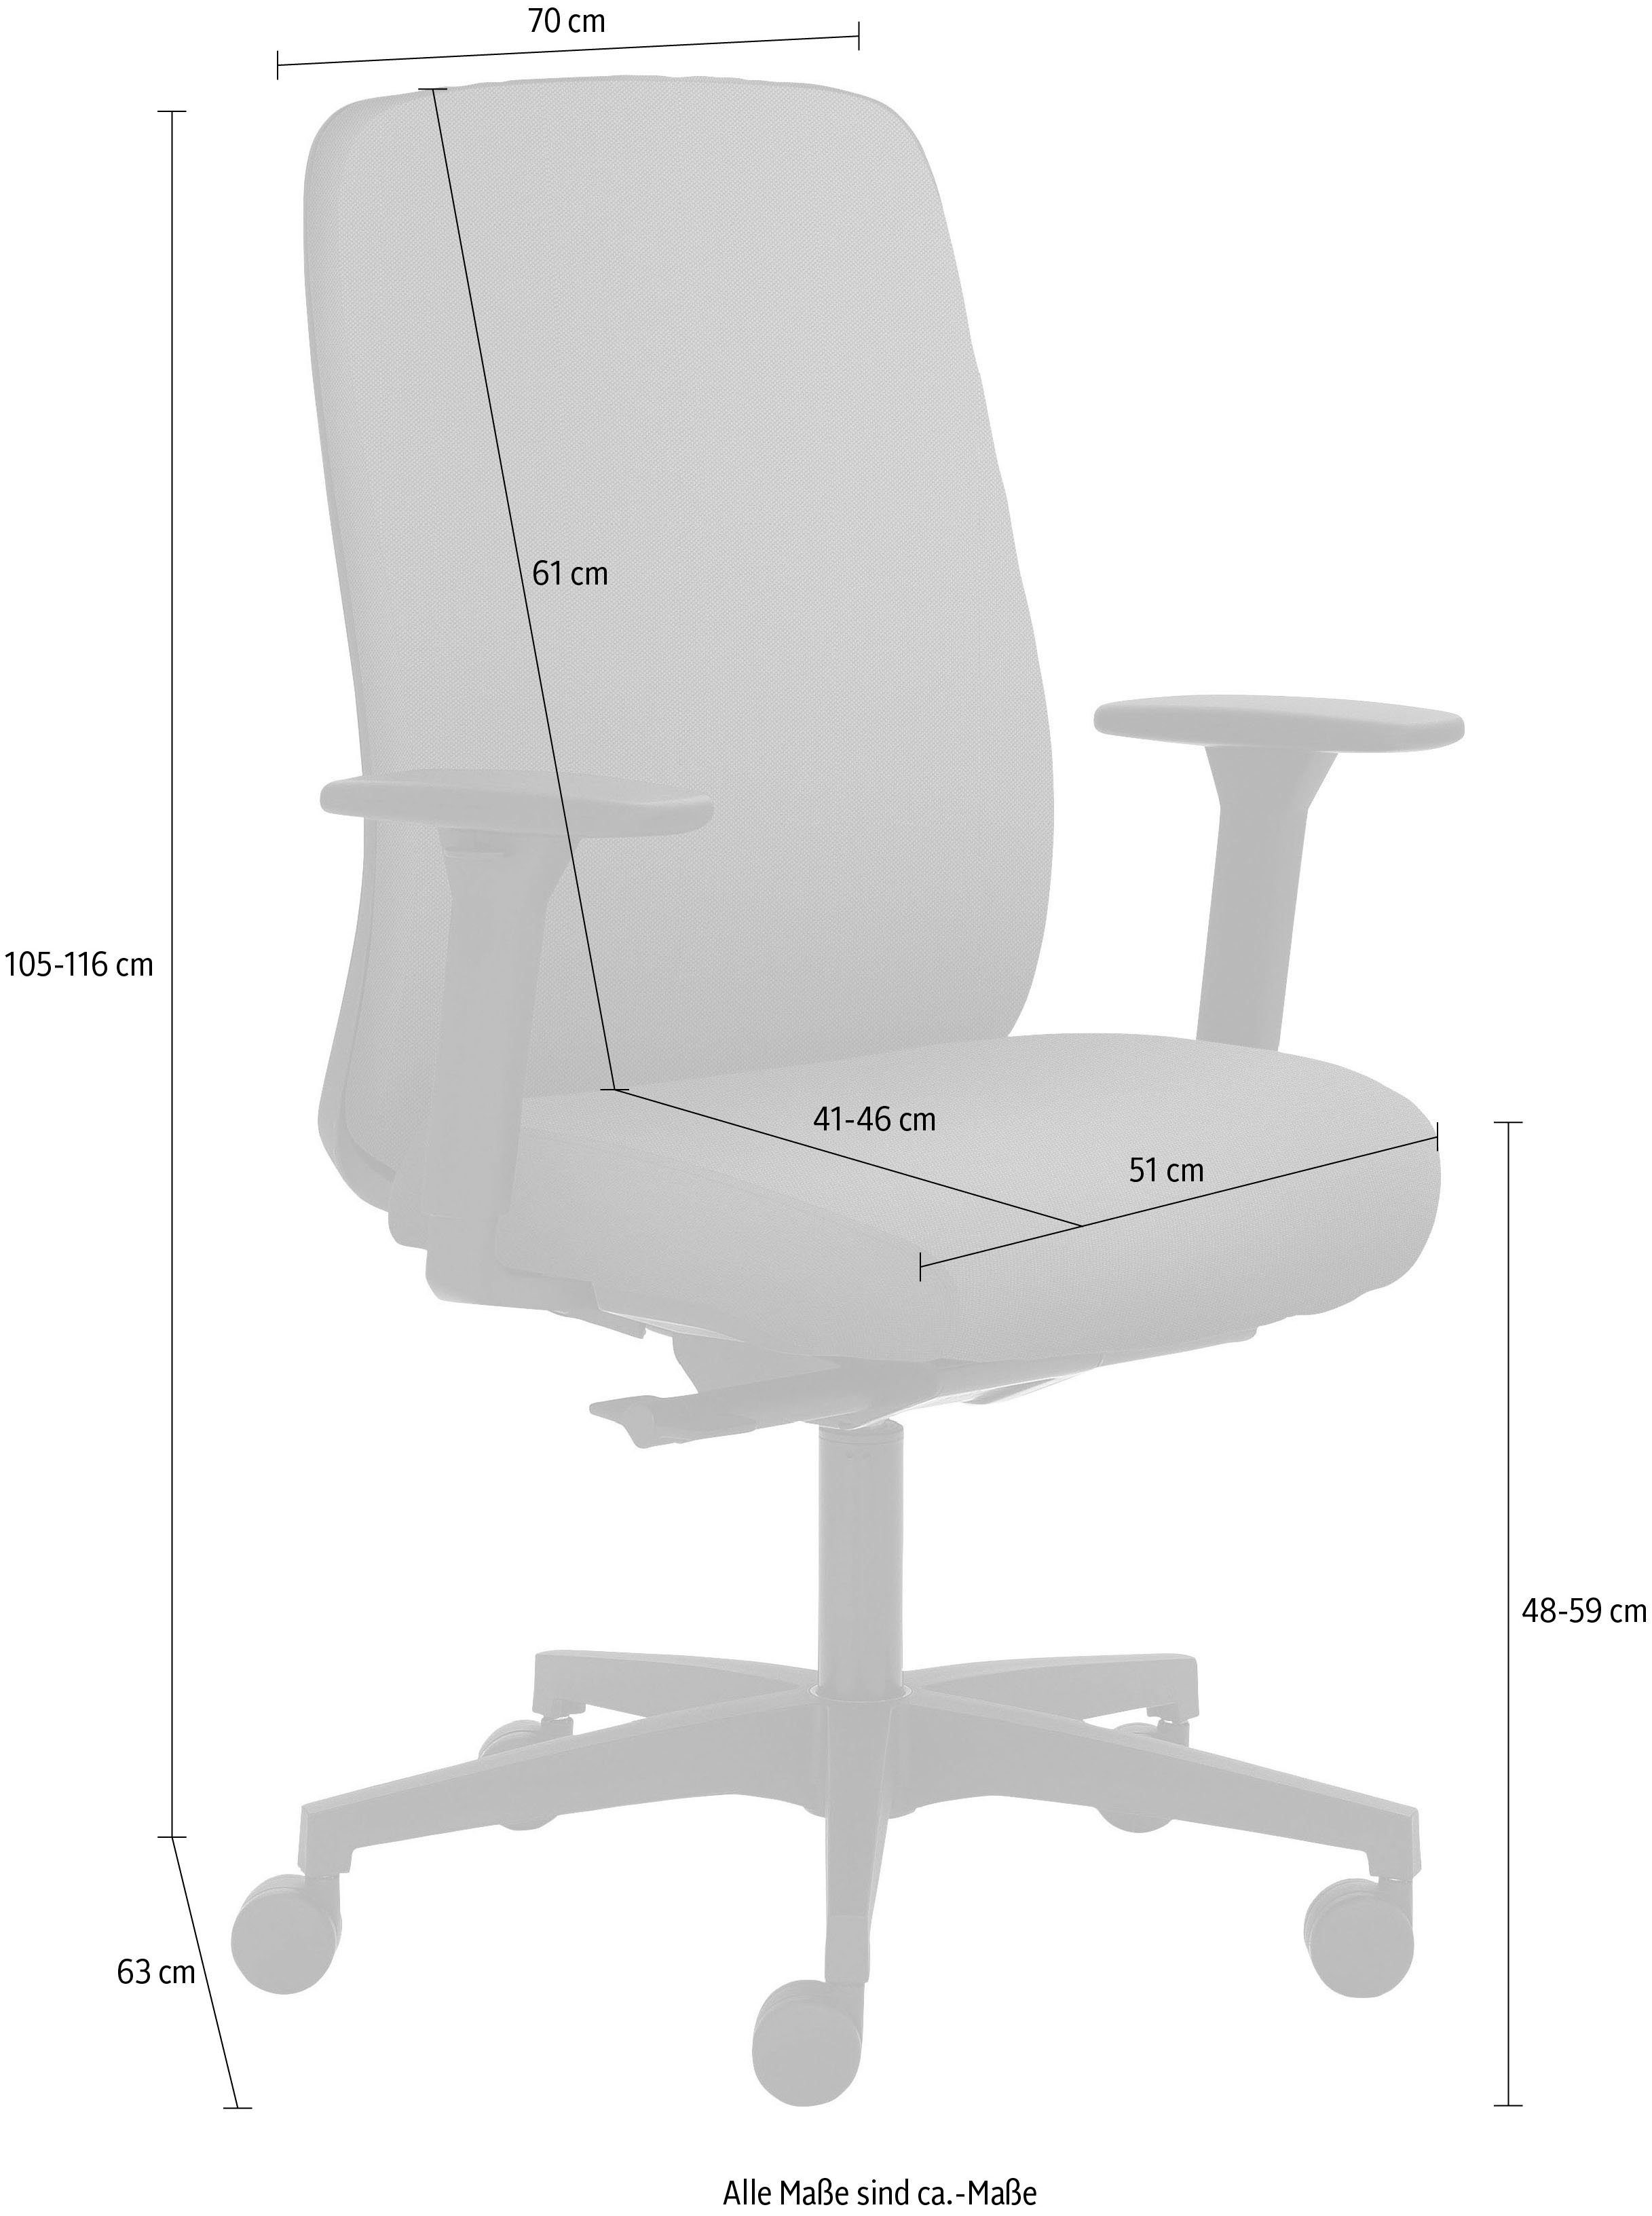 Grau Mayer 2229, 3D Sitztiefenverstellung Drehstuhl Sitzmöbel Armlehnen, | Grau